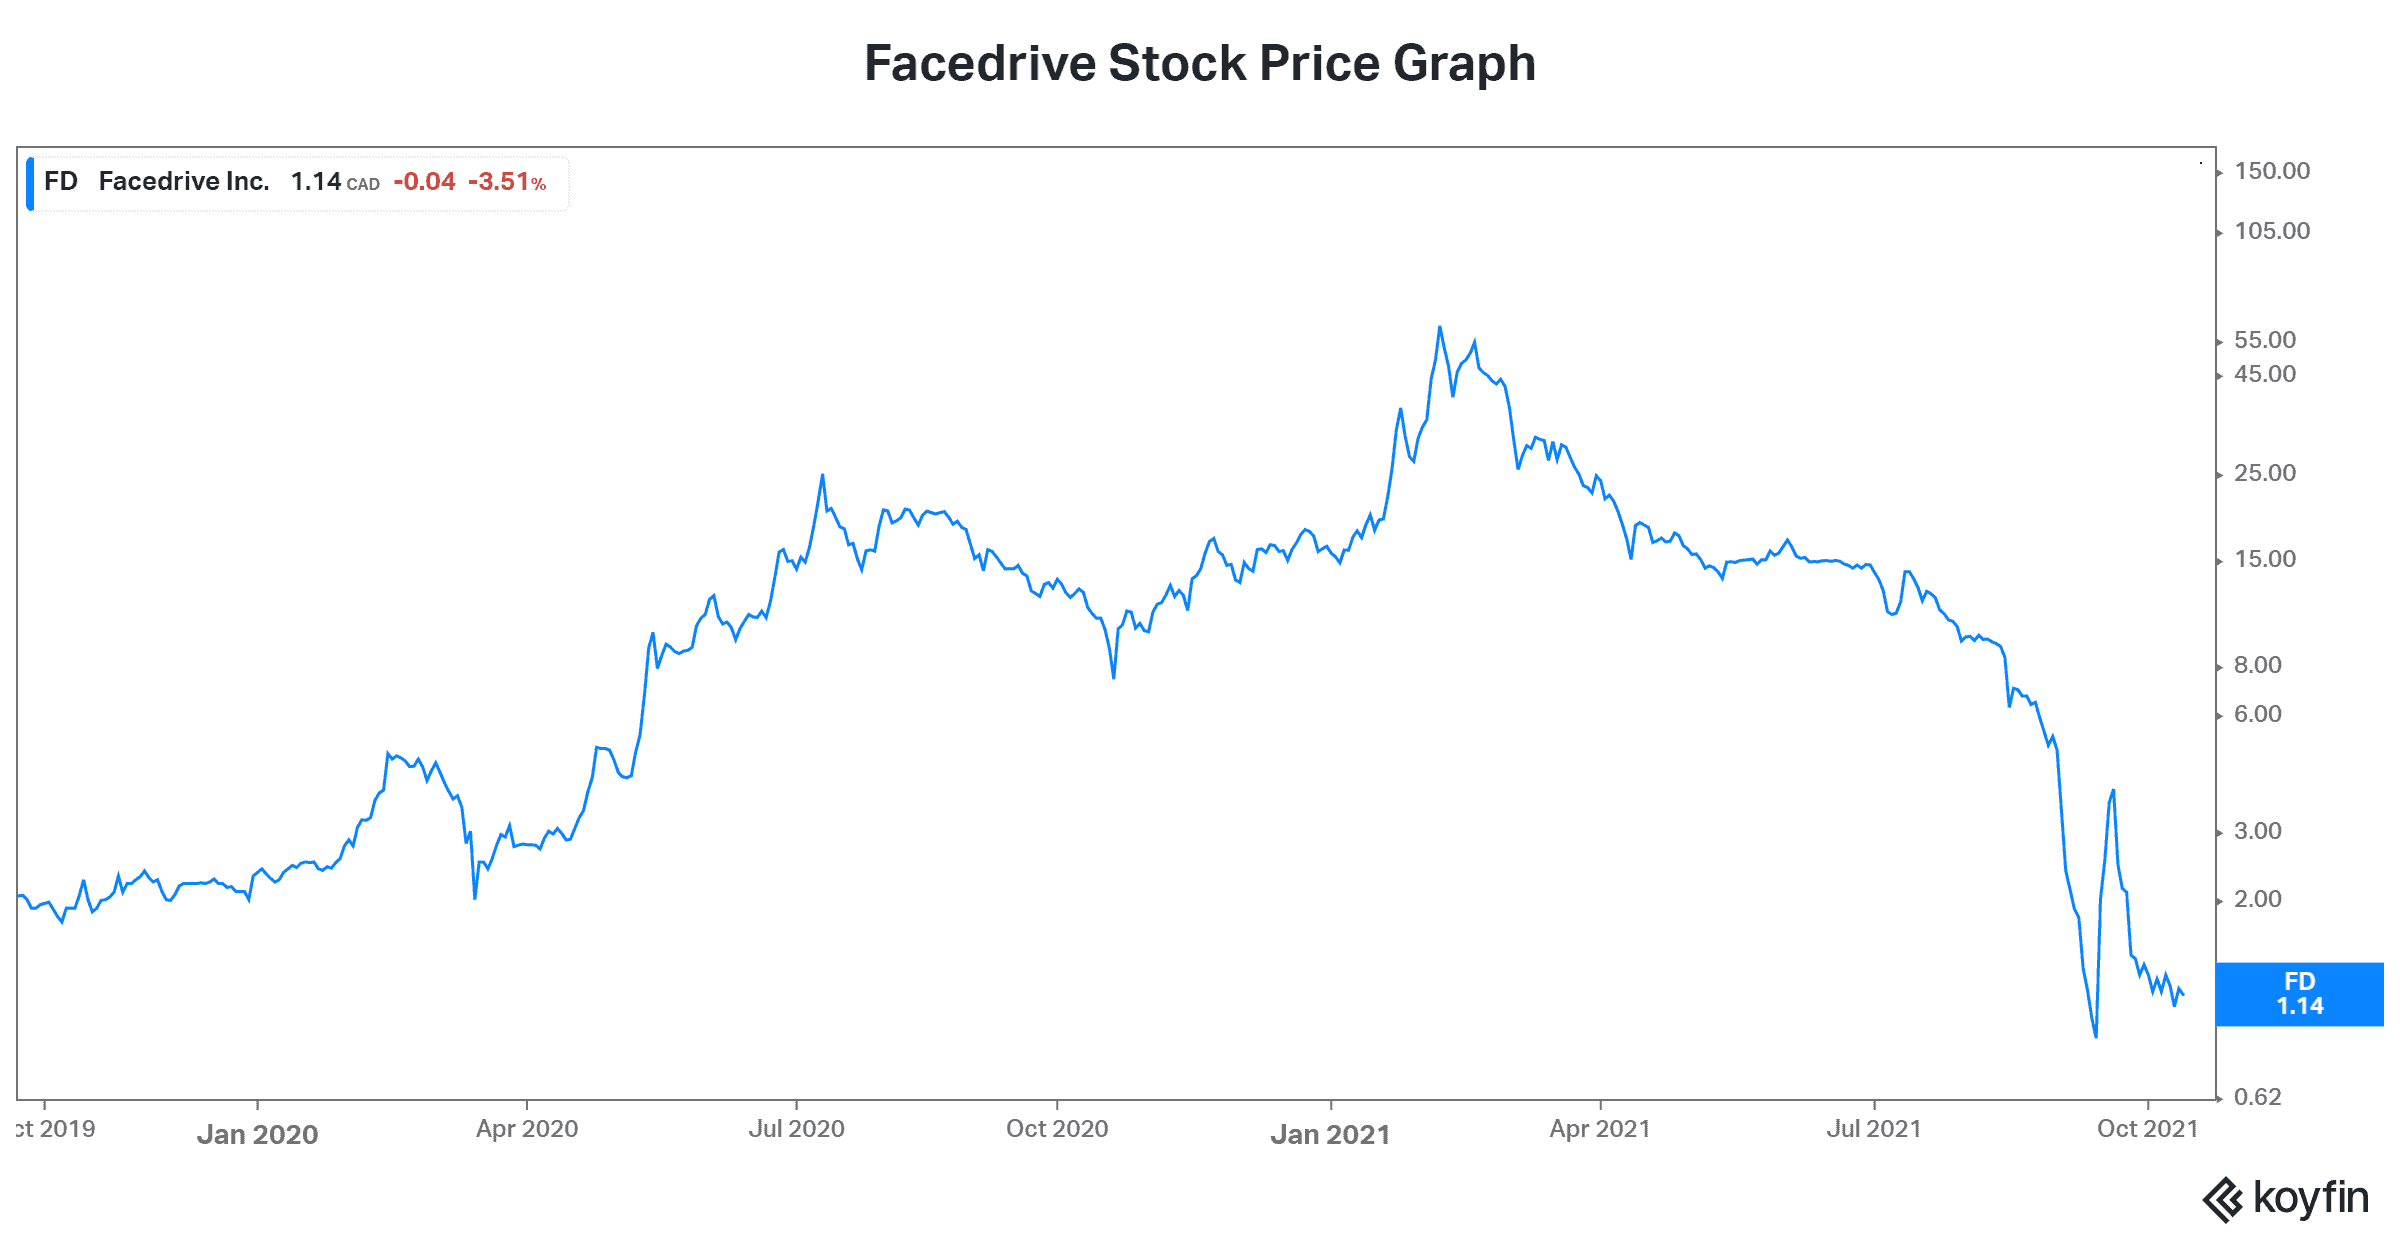 Facedrive stock price